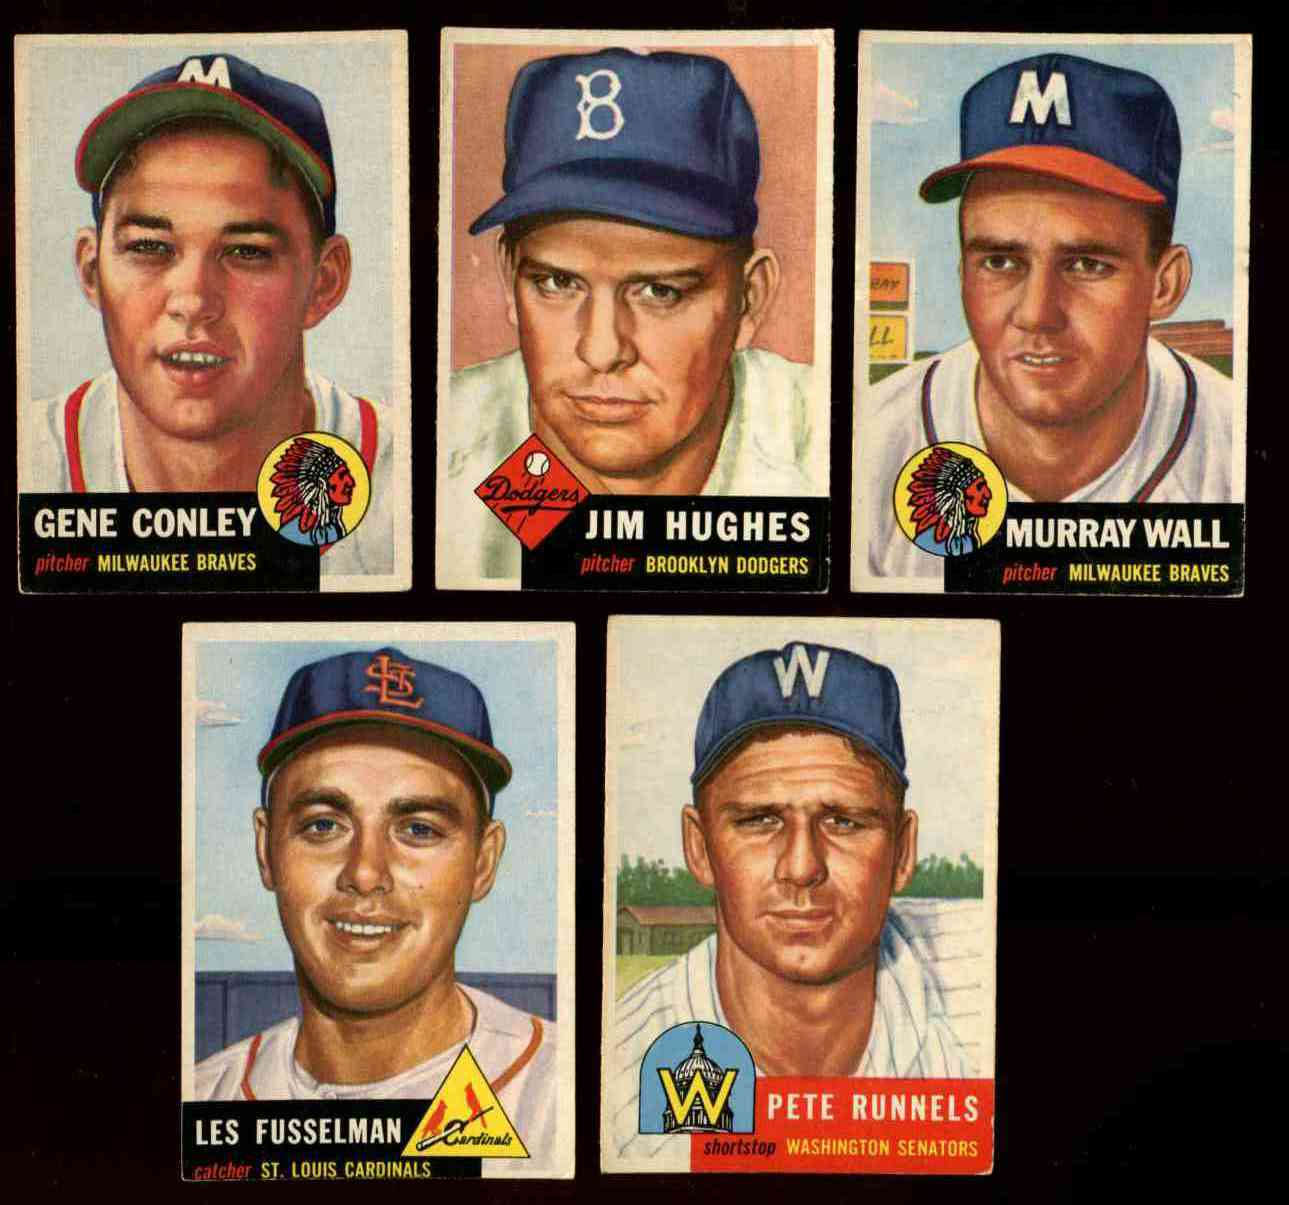 1953 Topps #219 Pete Runnels UER (Senators) Baseball cards value